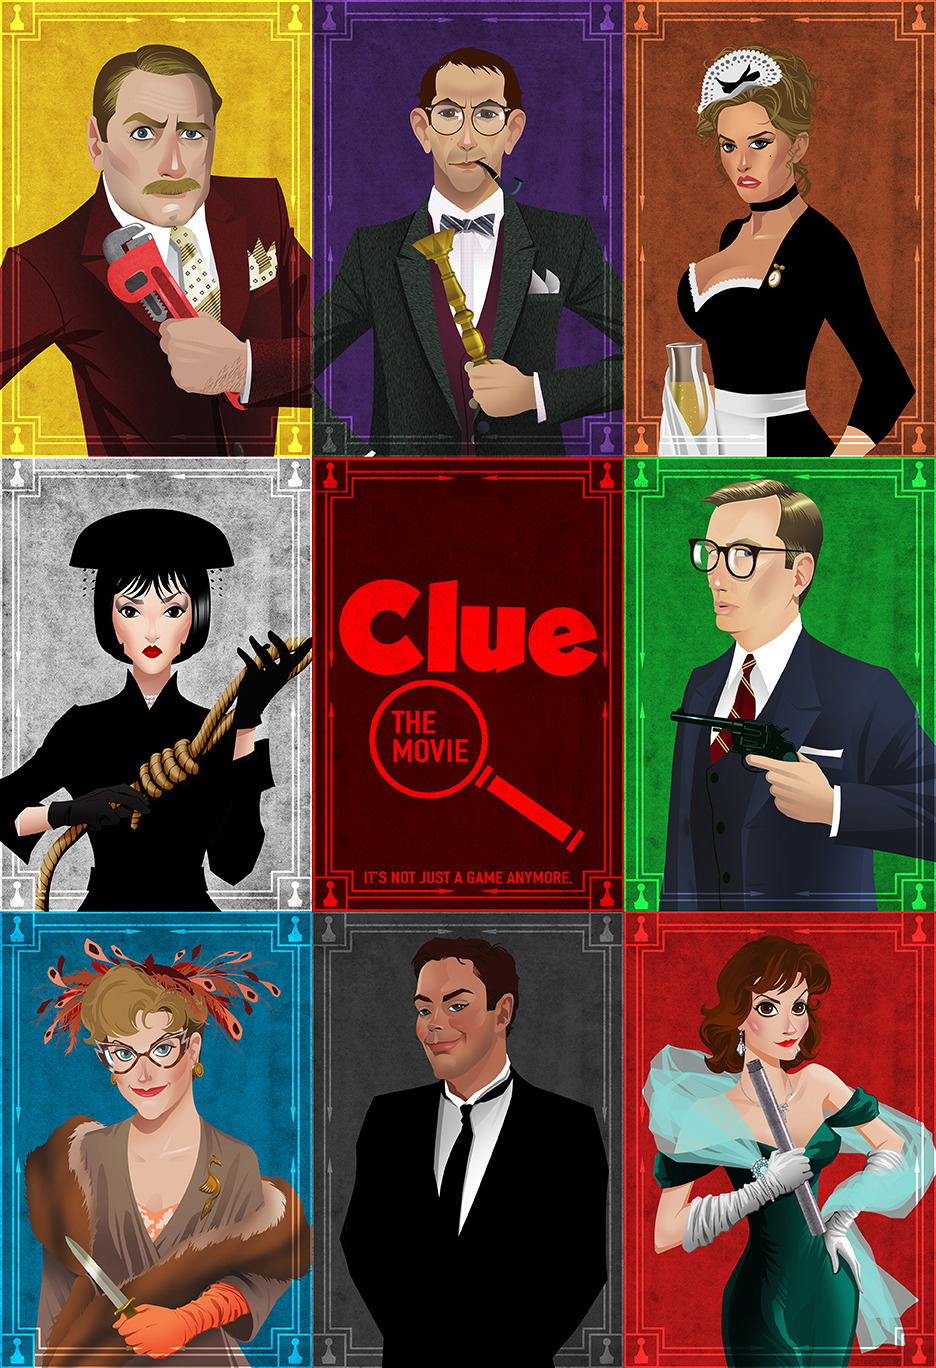 Sony planea llevar 'Clue' a cine y televisión 22